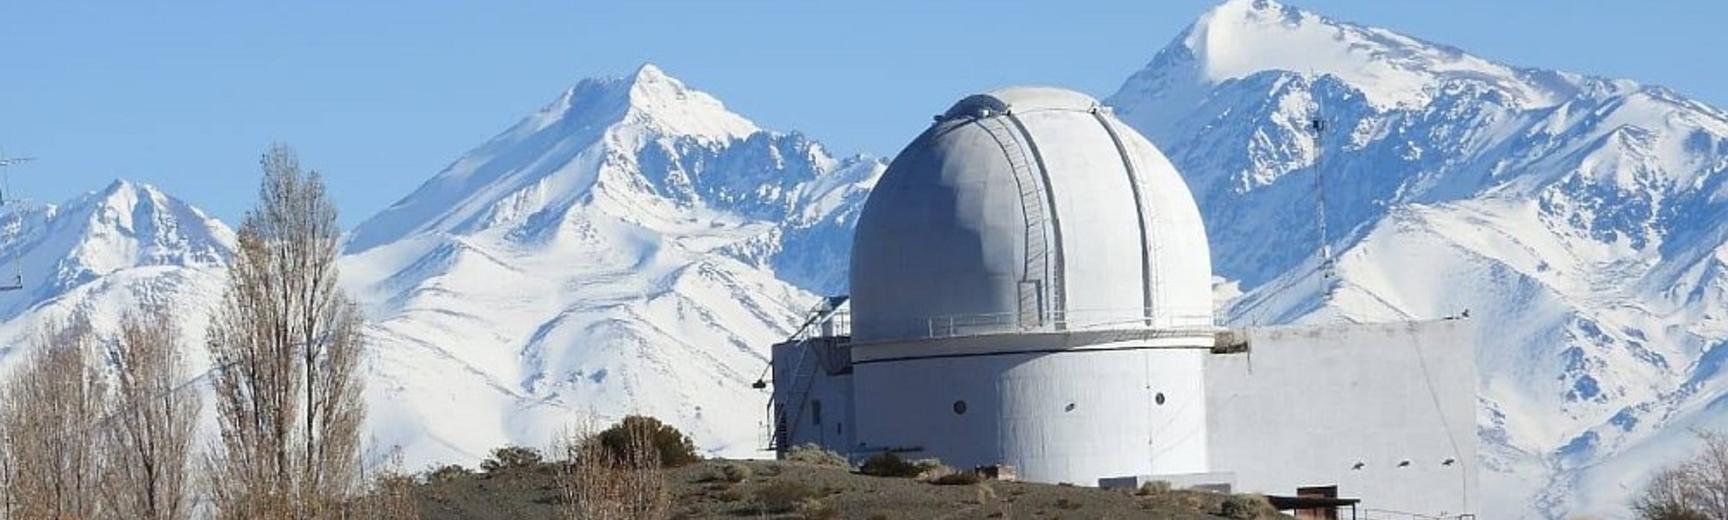 El Leoncito Casleo Observatory